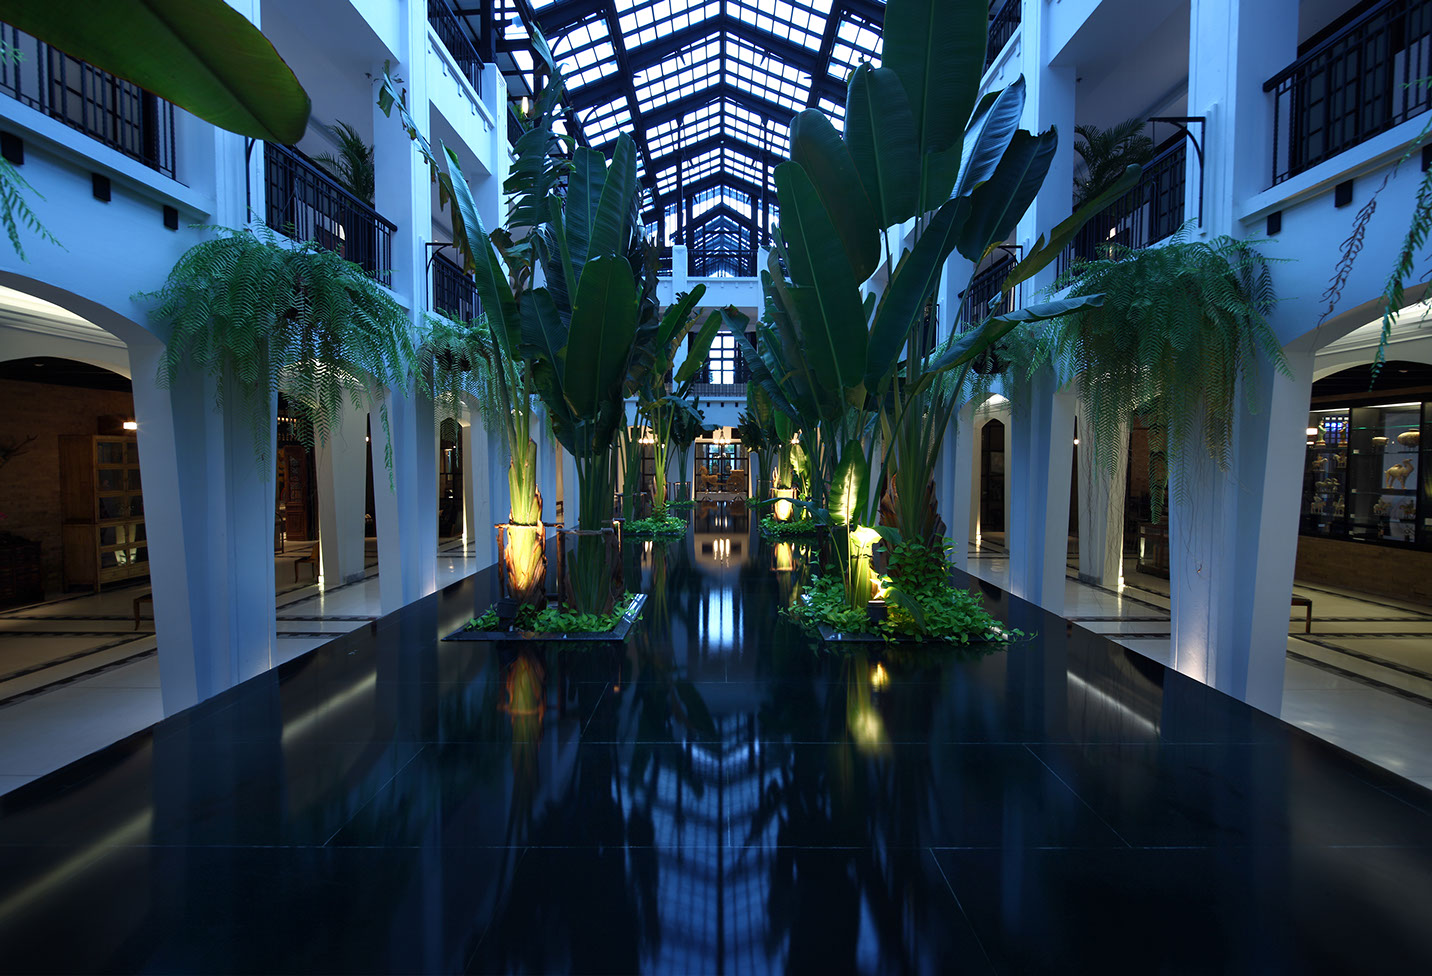 曼谷暹羅安納塔拉酒店 - Anantara Siam Bangkok Hotel - 348則旅客評論及格價